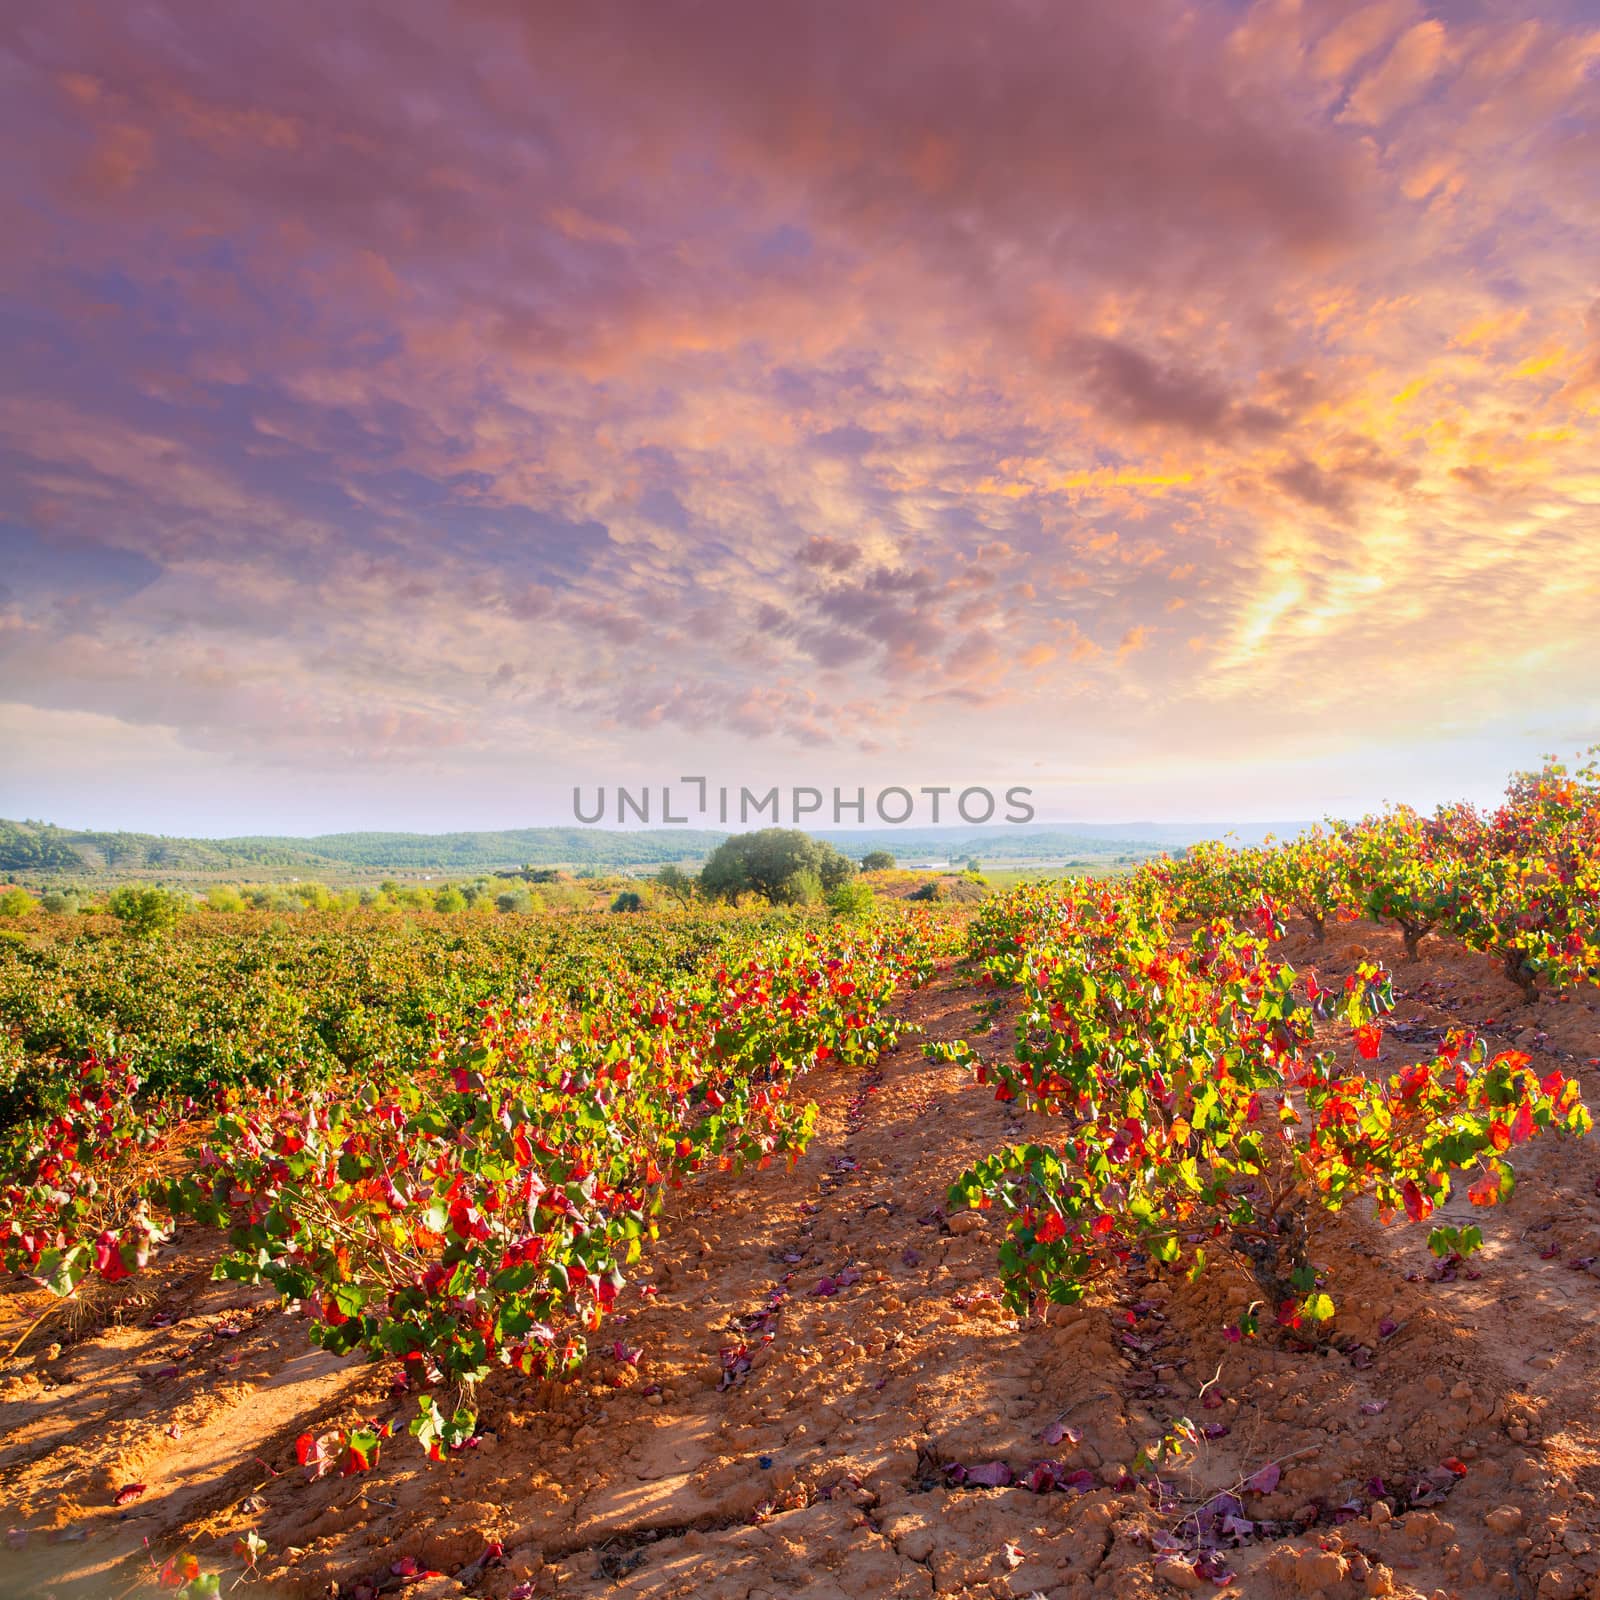 Autumn golden red vineyards in Utiel Requena by lunamarina